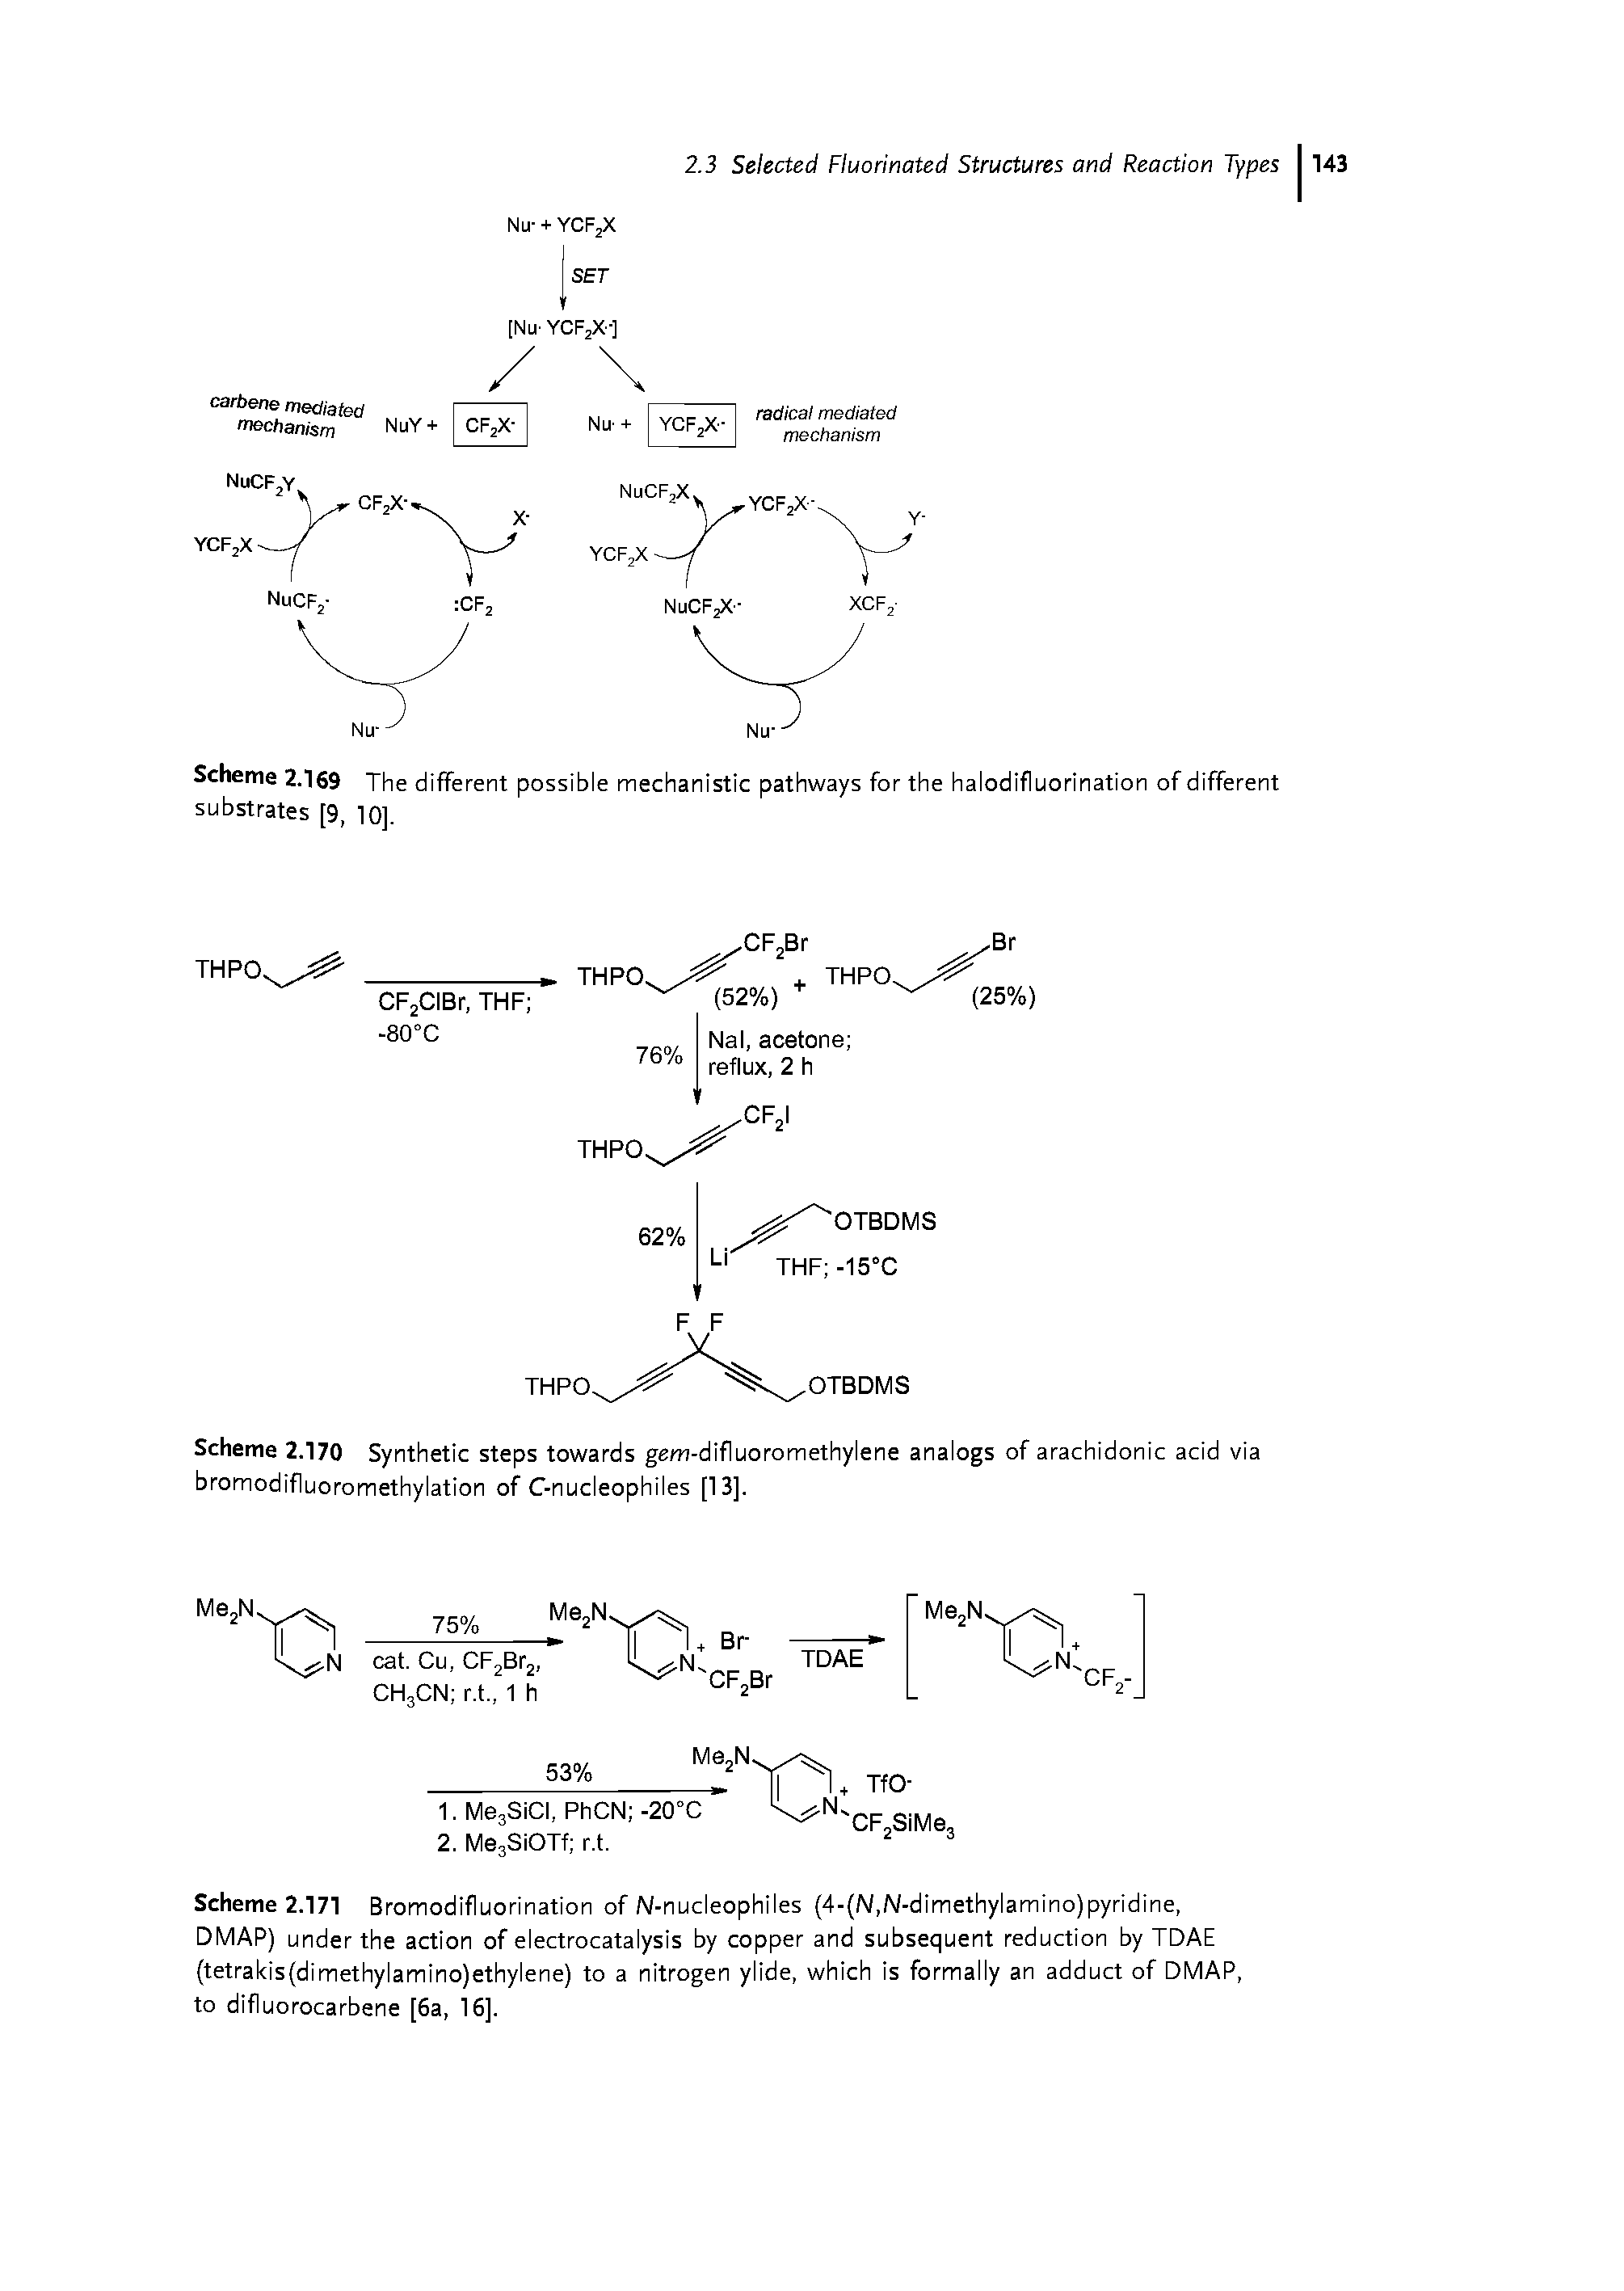 Scheme 2.170 Synthetic steps towards gem-difluoromethylene analogs of arachidonic acid via bromodifluoromethylation of C-nucleophiles [13].